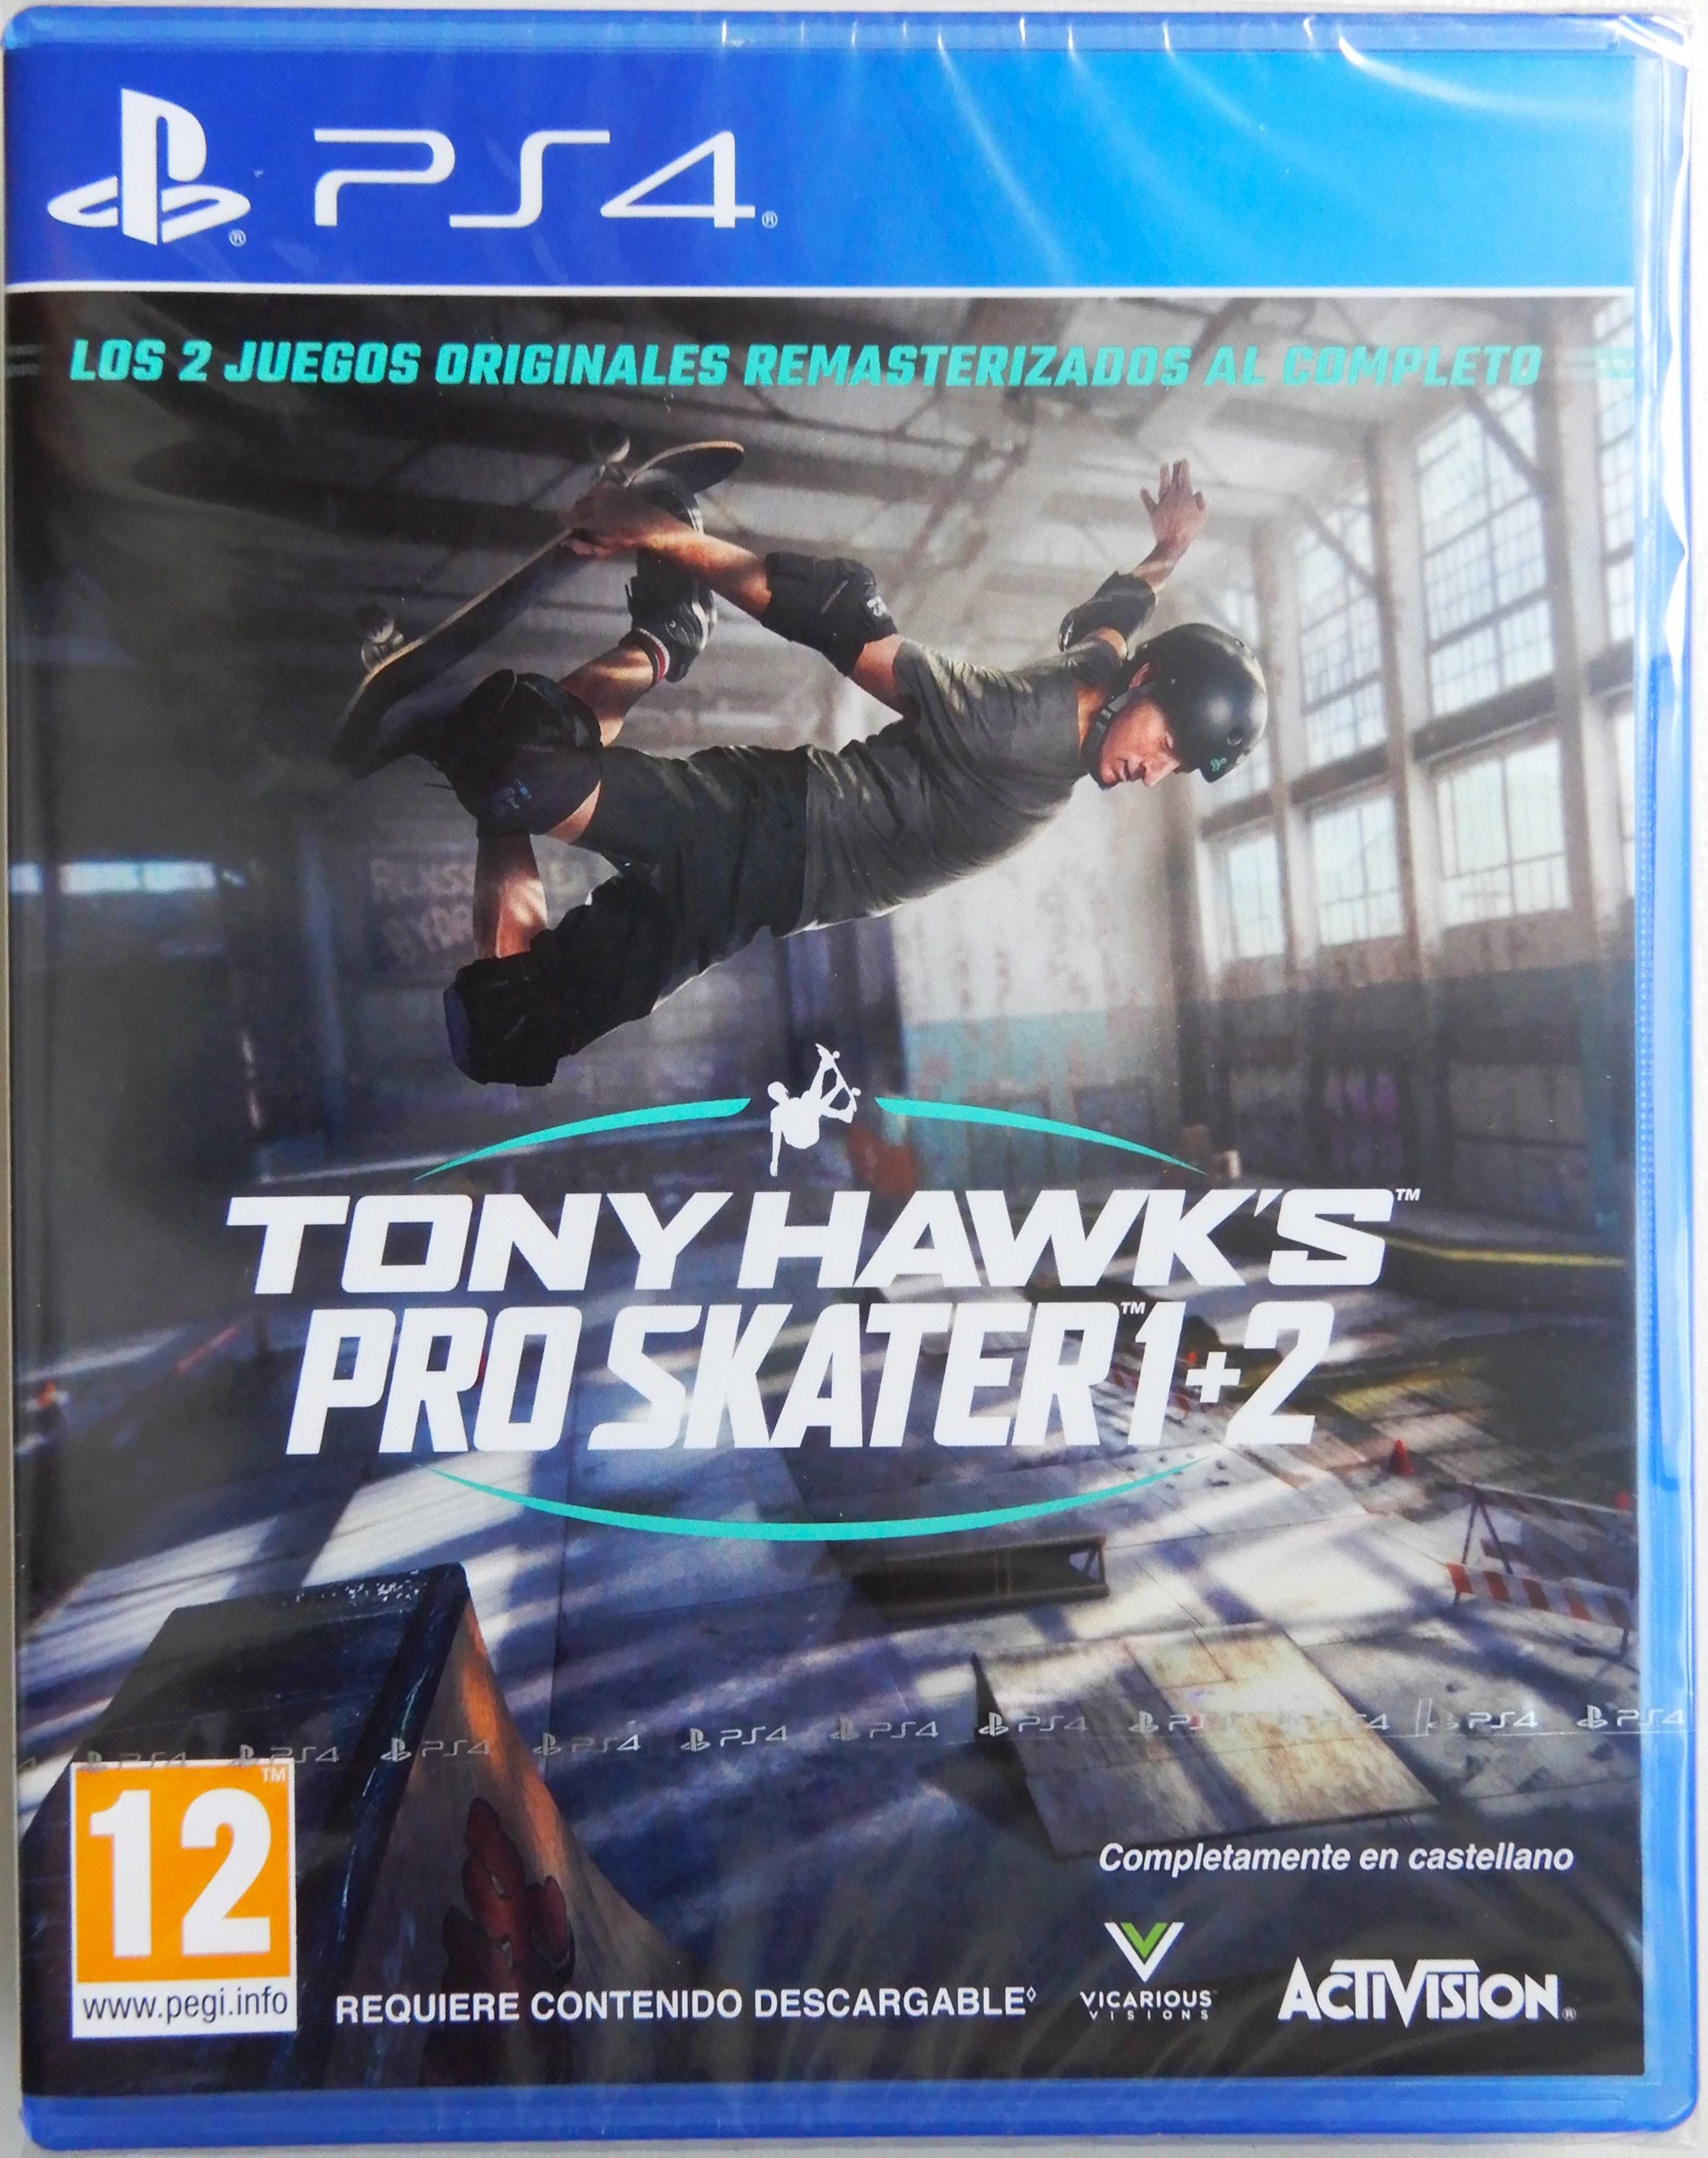 eee Tony Hawk's Pro Skater 1+2 NOWA gra na PS4